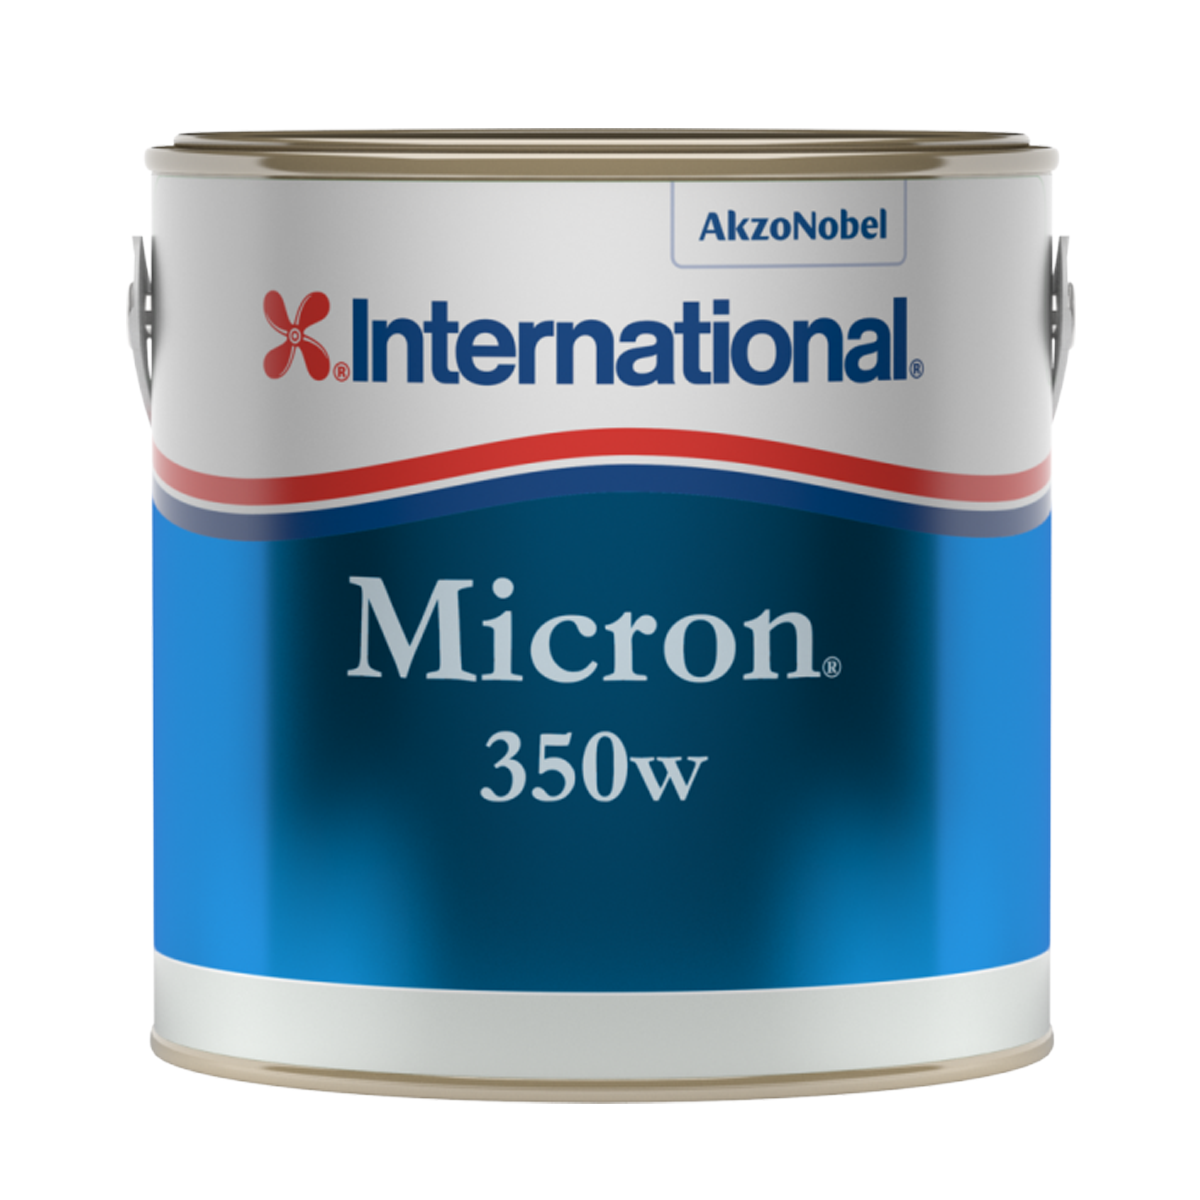 Micron 350W